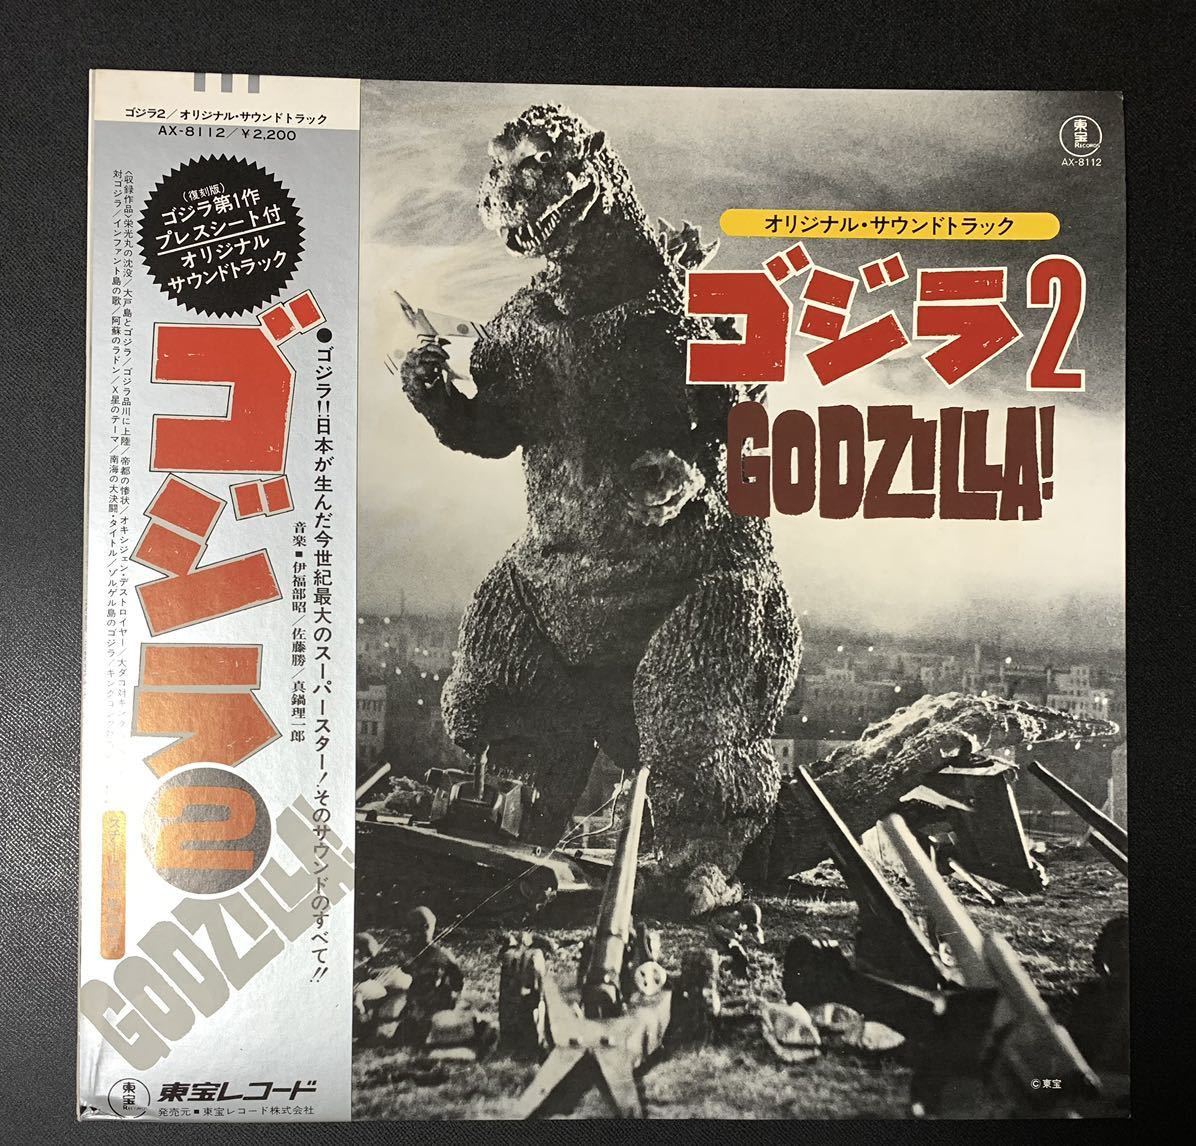 *LP/ с лентой / Godzilla 2 оригинал * звук * грузовик /Godzilla/ Godzilla no. 1 произведение Press сиденье ( переиздание ) инструкция есть /. удача часть ./AX-8112/ запись 